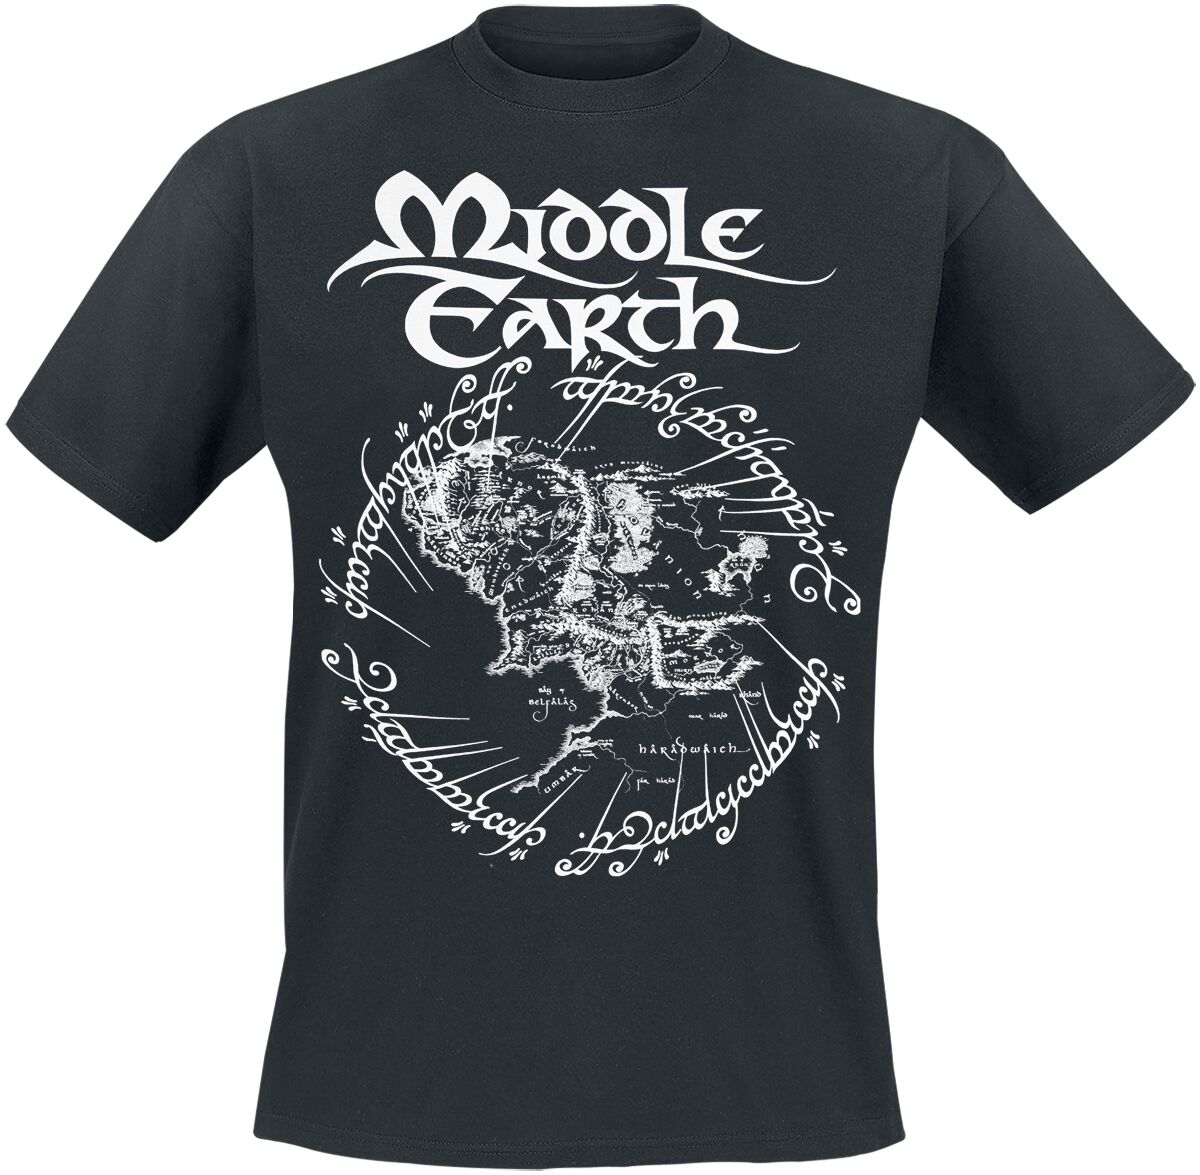 Der Herr der Ringe T-Shirt - Middle Earth - S bis 3XL - für Männer - Größe 3XL - schwarz  - Lizenzierter Fanartikel